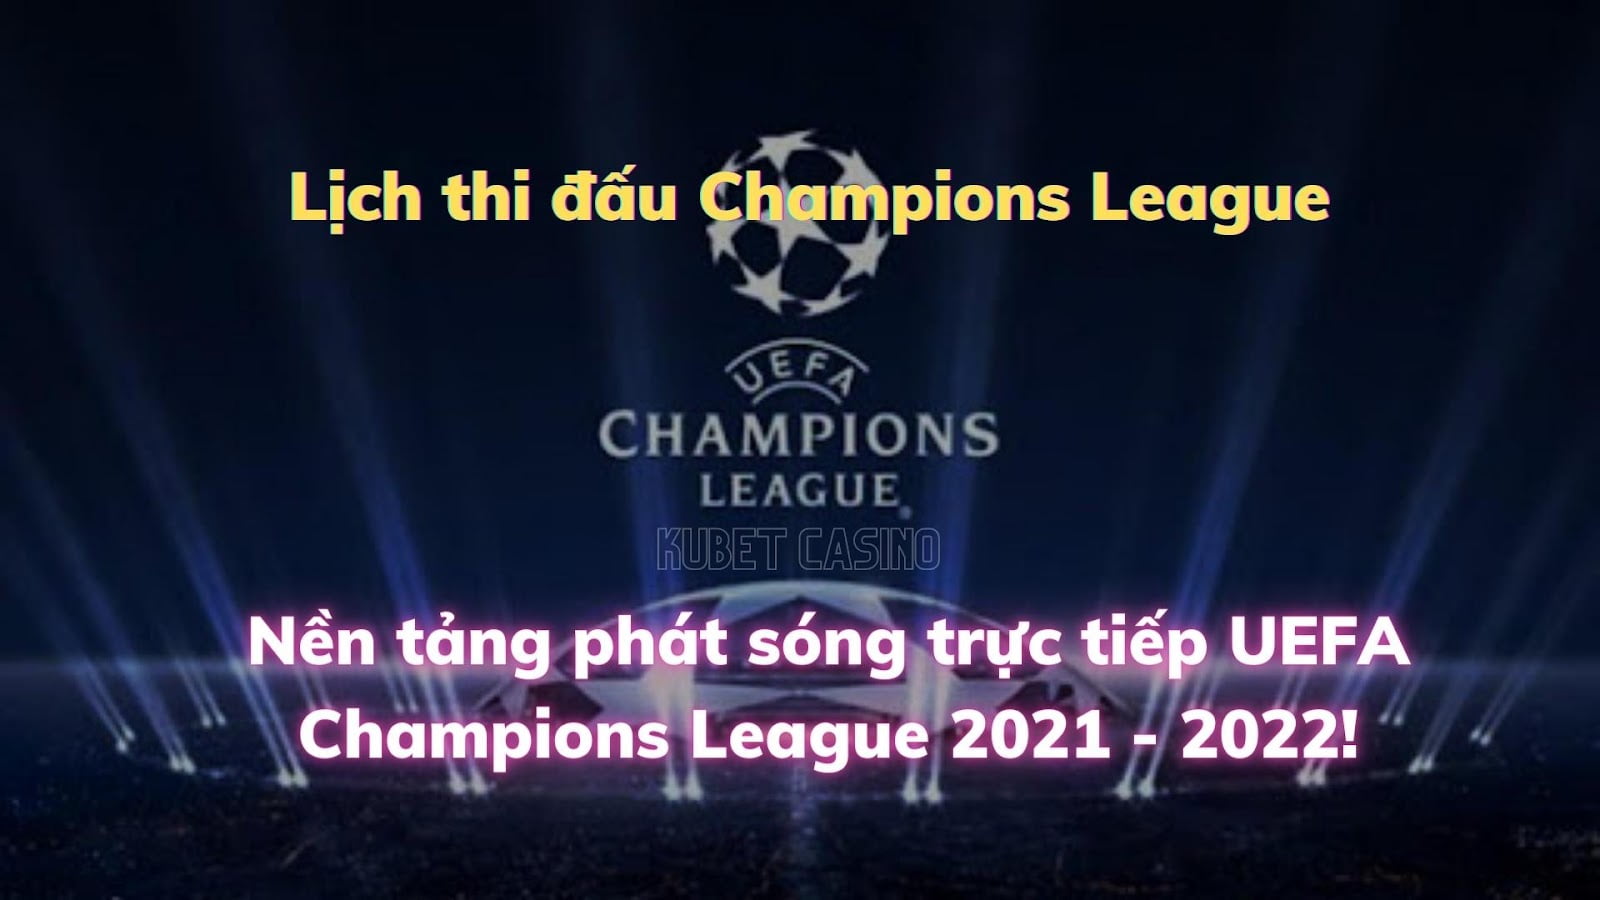 Nền tảng phát sóng trực tiếp UEFA Champions League 2021 - 2022! Lịch thi đấu Champions League